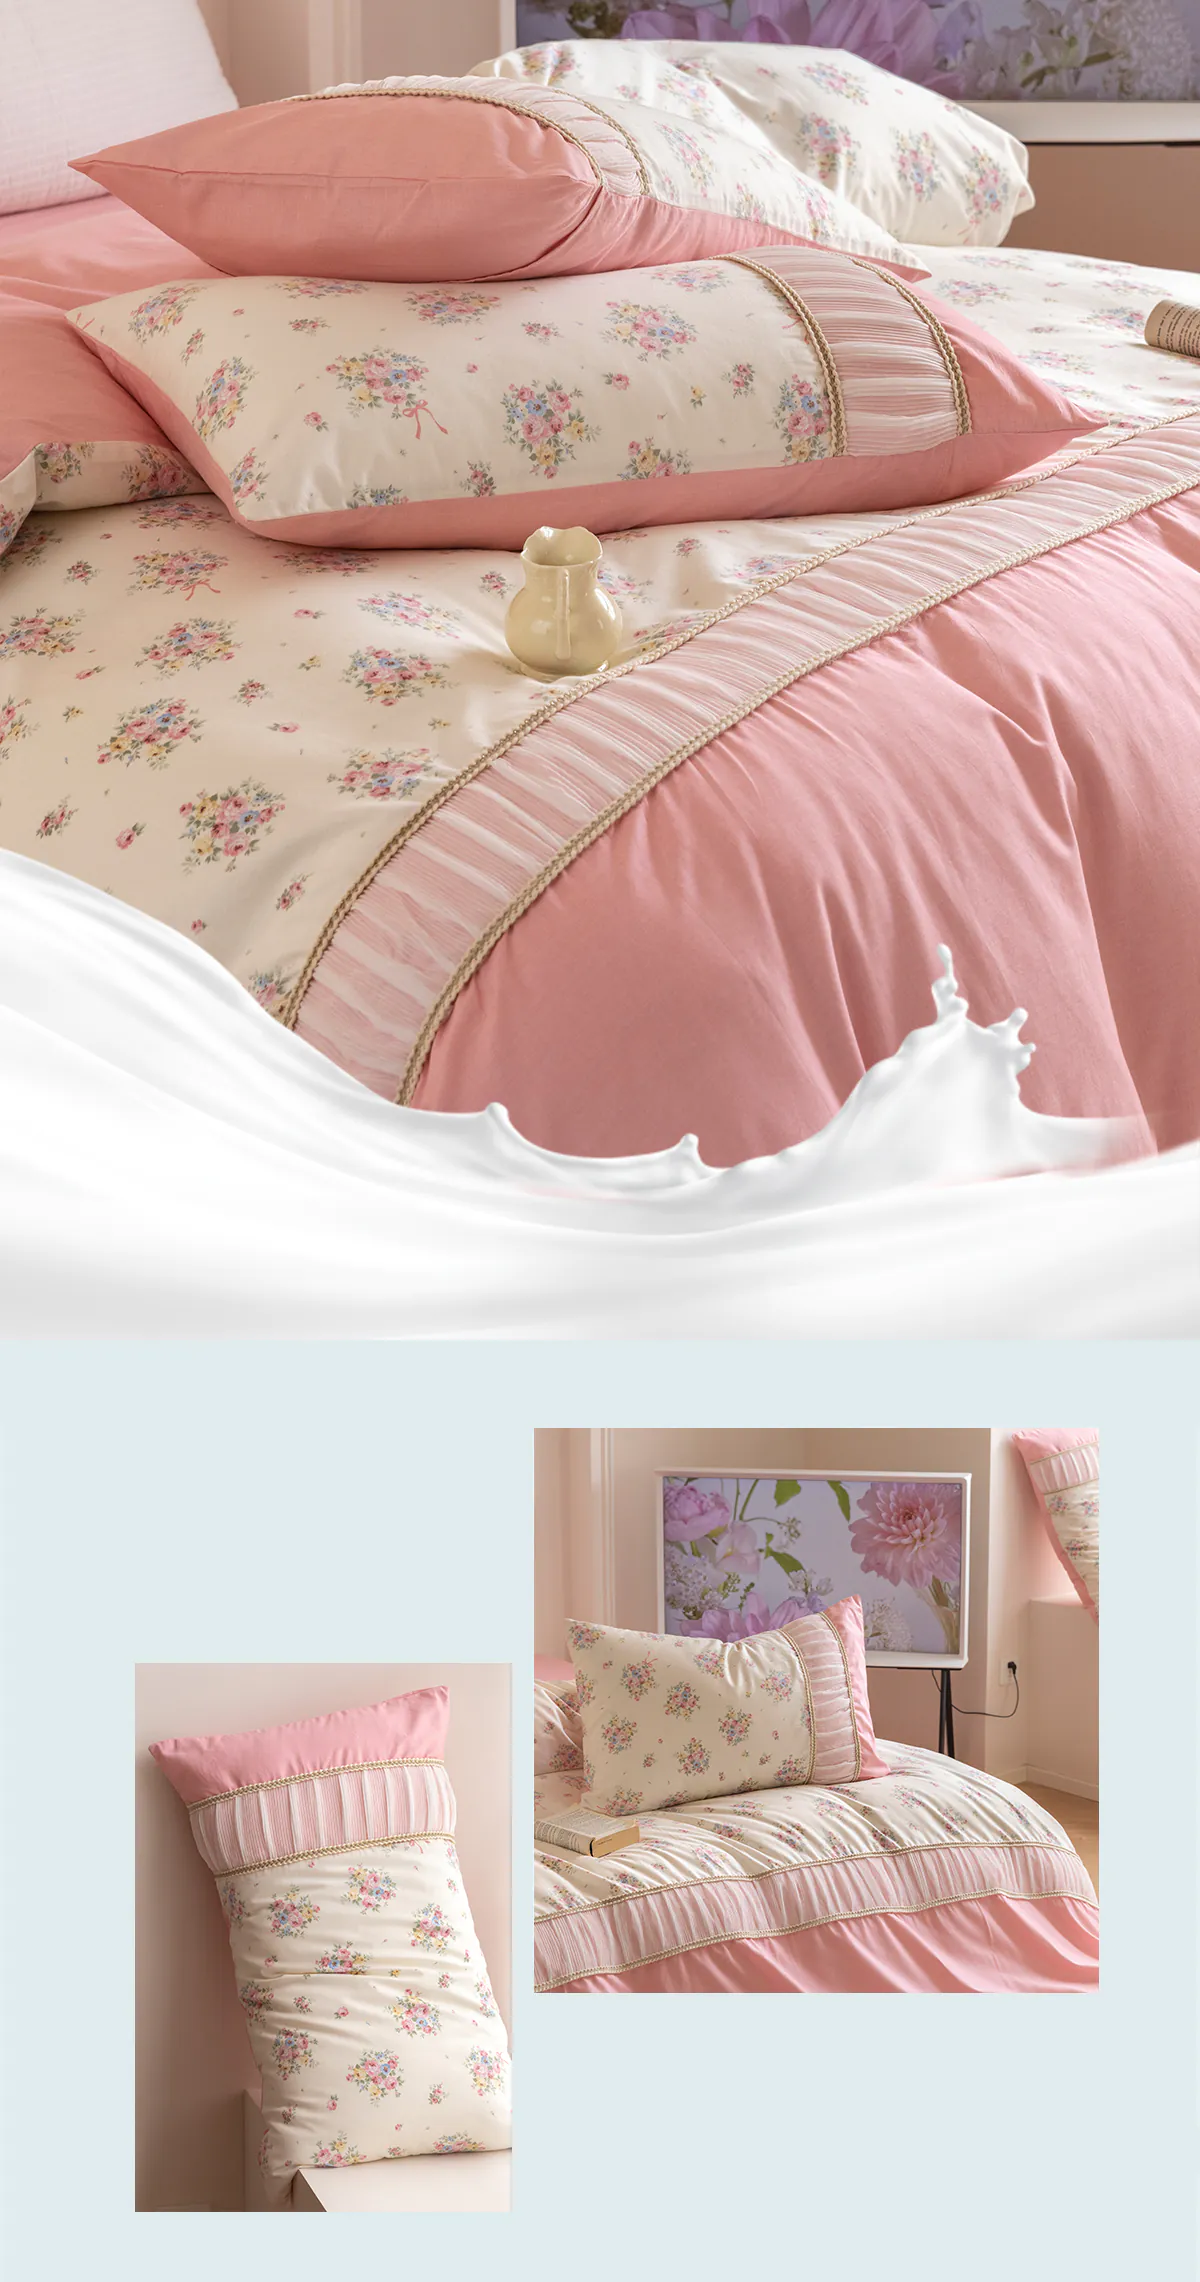 Retro-Princess-Style-100-Cotton-Floral-Duvet-Cover-Bedding-Set13